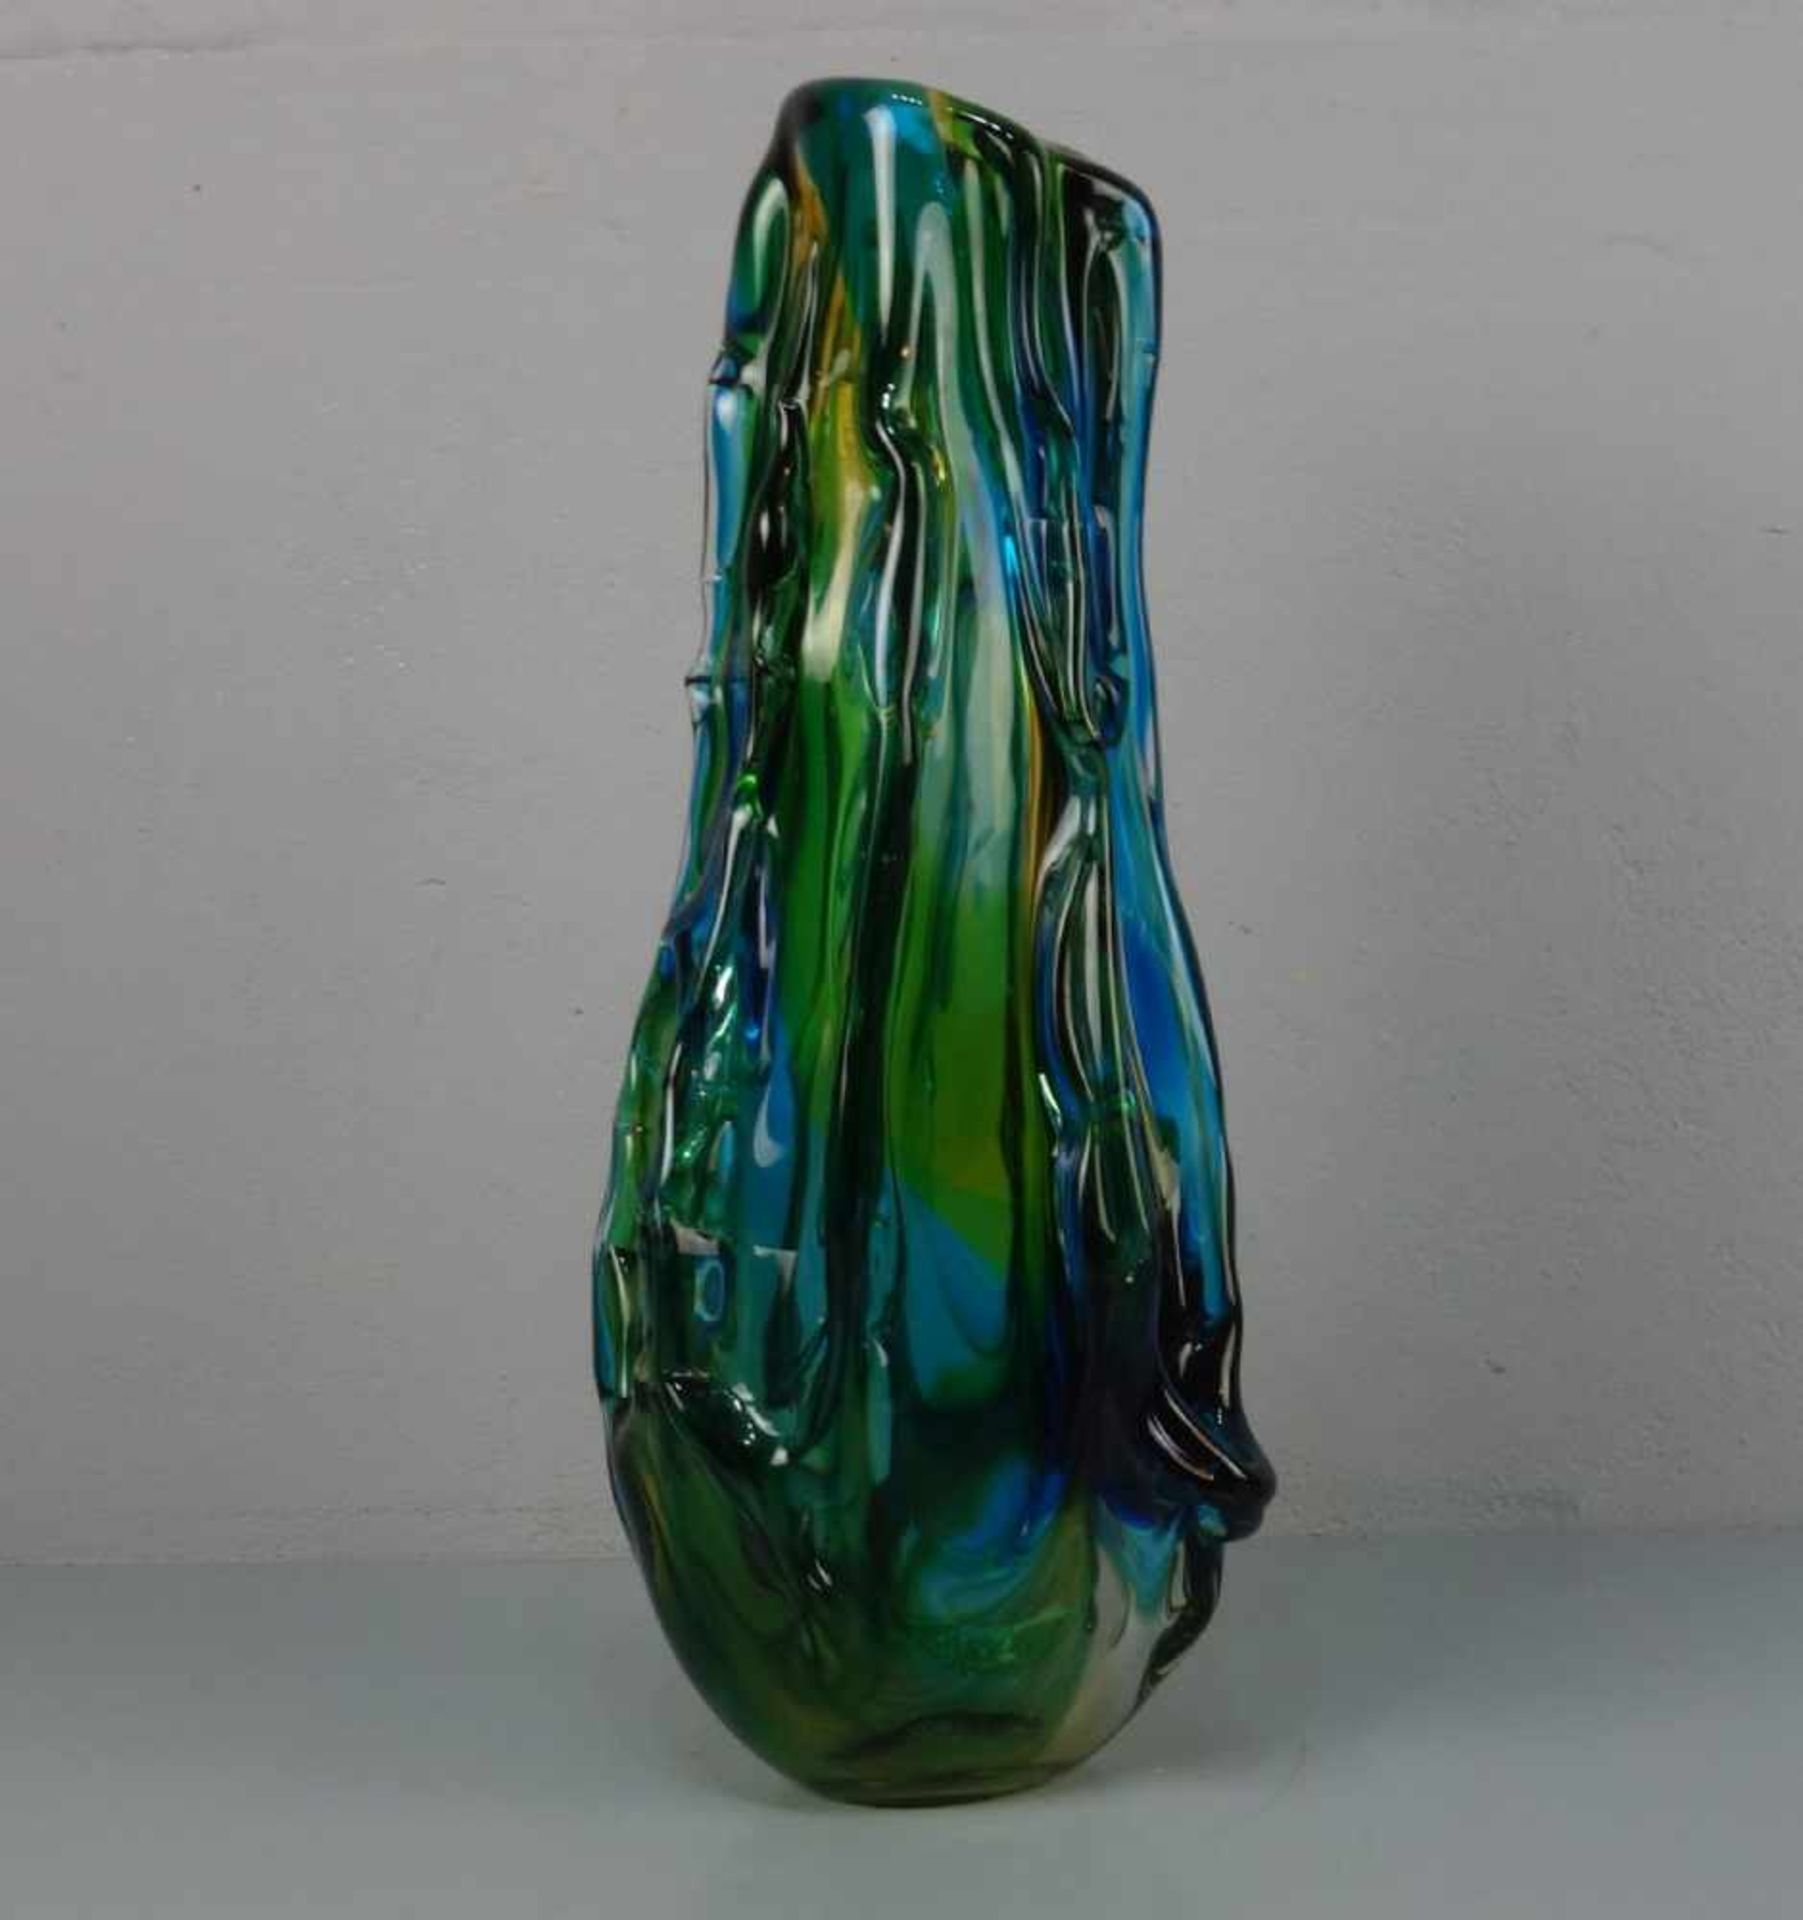 MURANO - GLASVASE, gerippte Keulenform. Dickwandiges farbloses Glas, grün, gelb und blau - Image 3 of 4